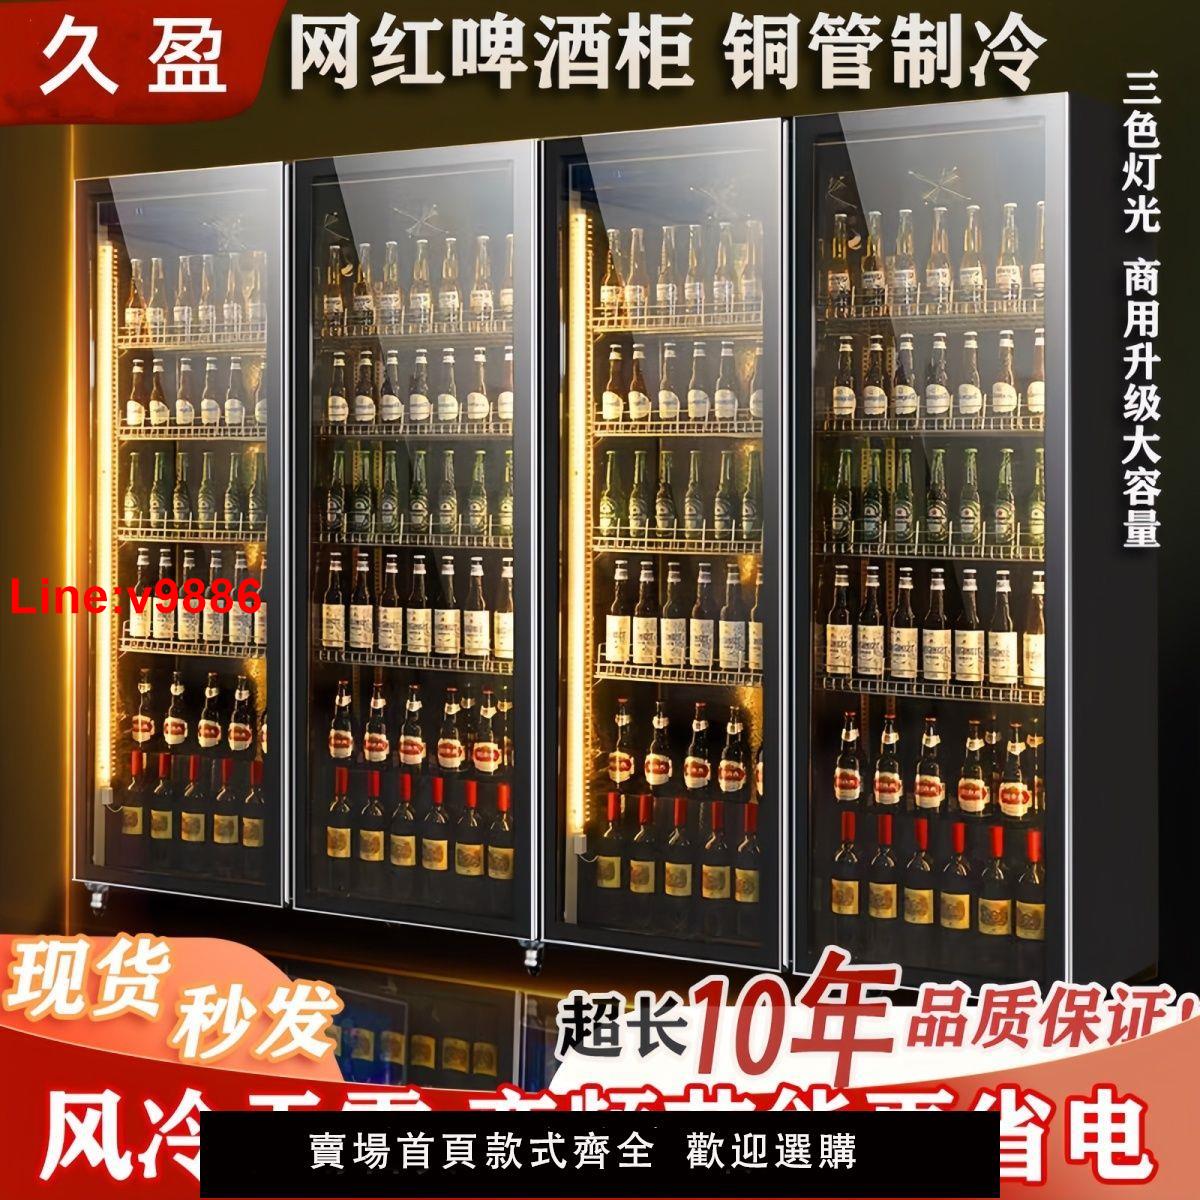 【台灣公司 超低價】網紅啤酒柜飲料柜酒水展示柜冷藏冰柜商用冷柜三門酒吧冰箱展示柜